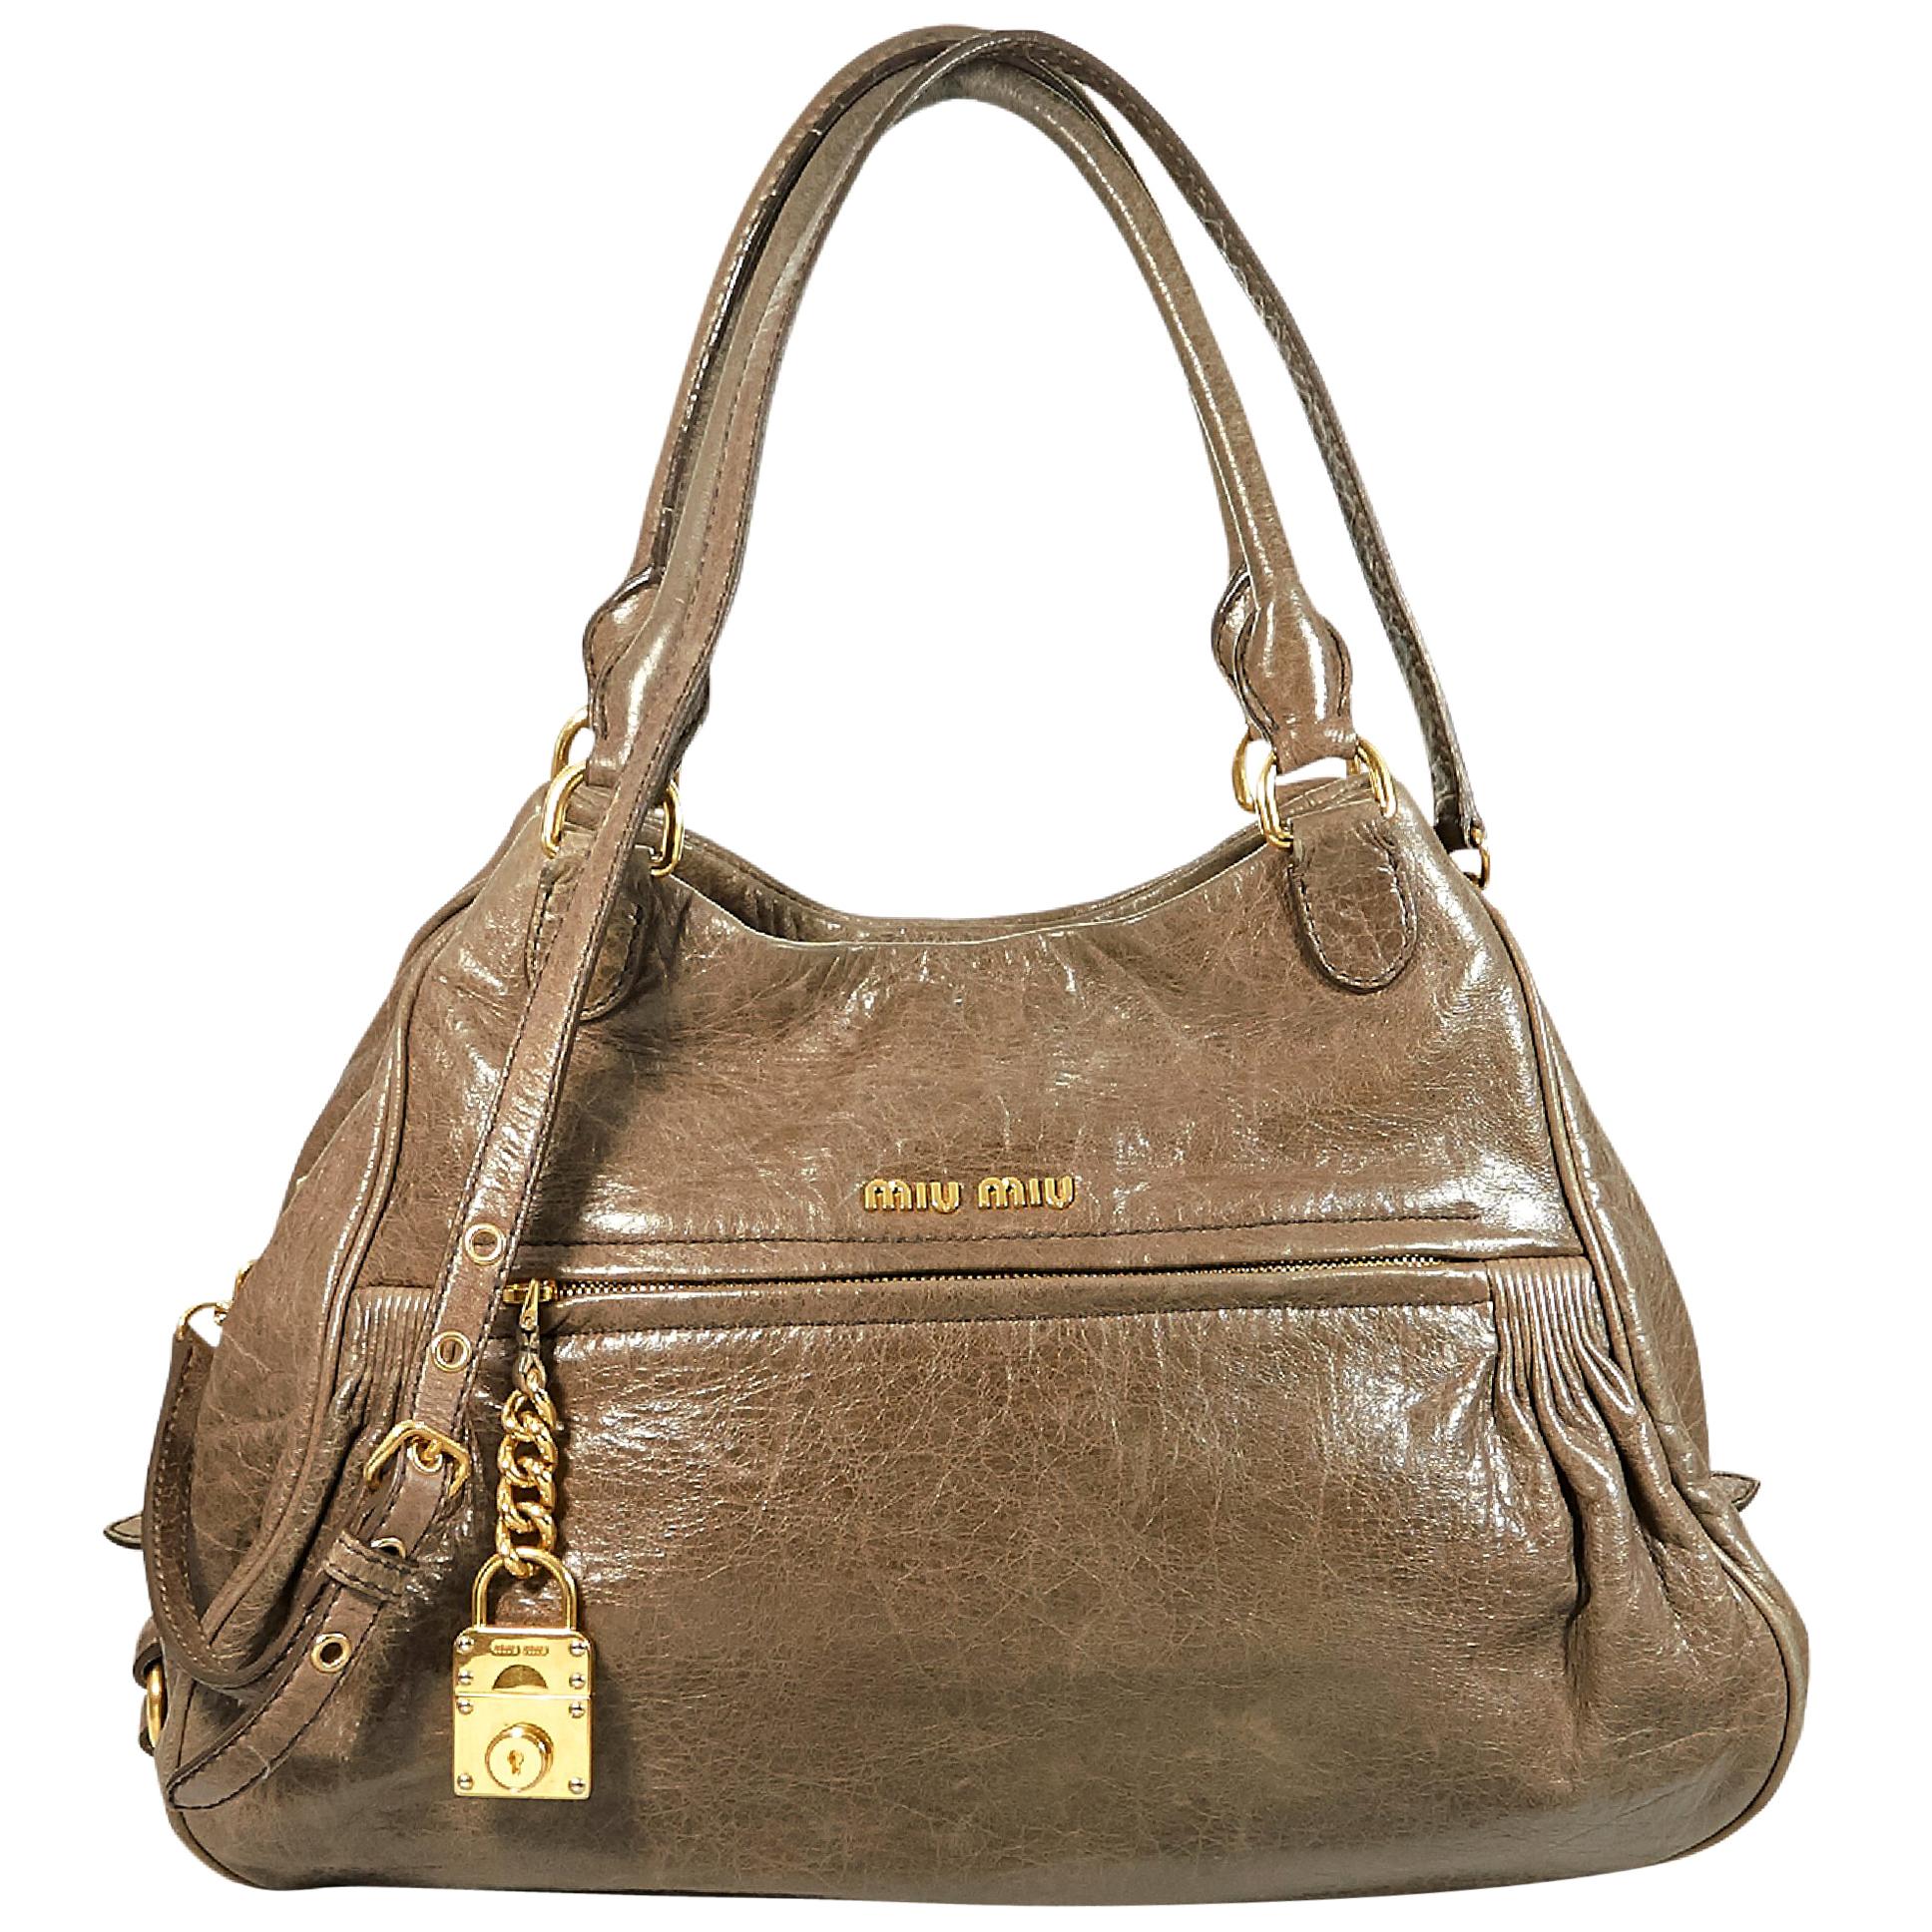 Taupe Miu Miu Leather Satchel Handbag